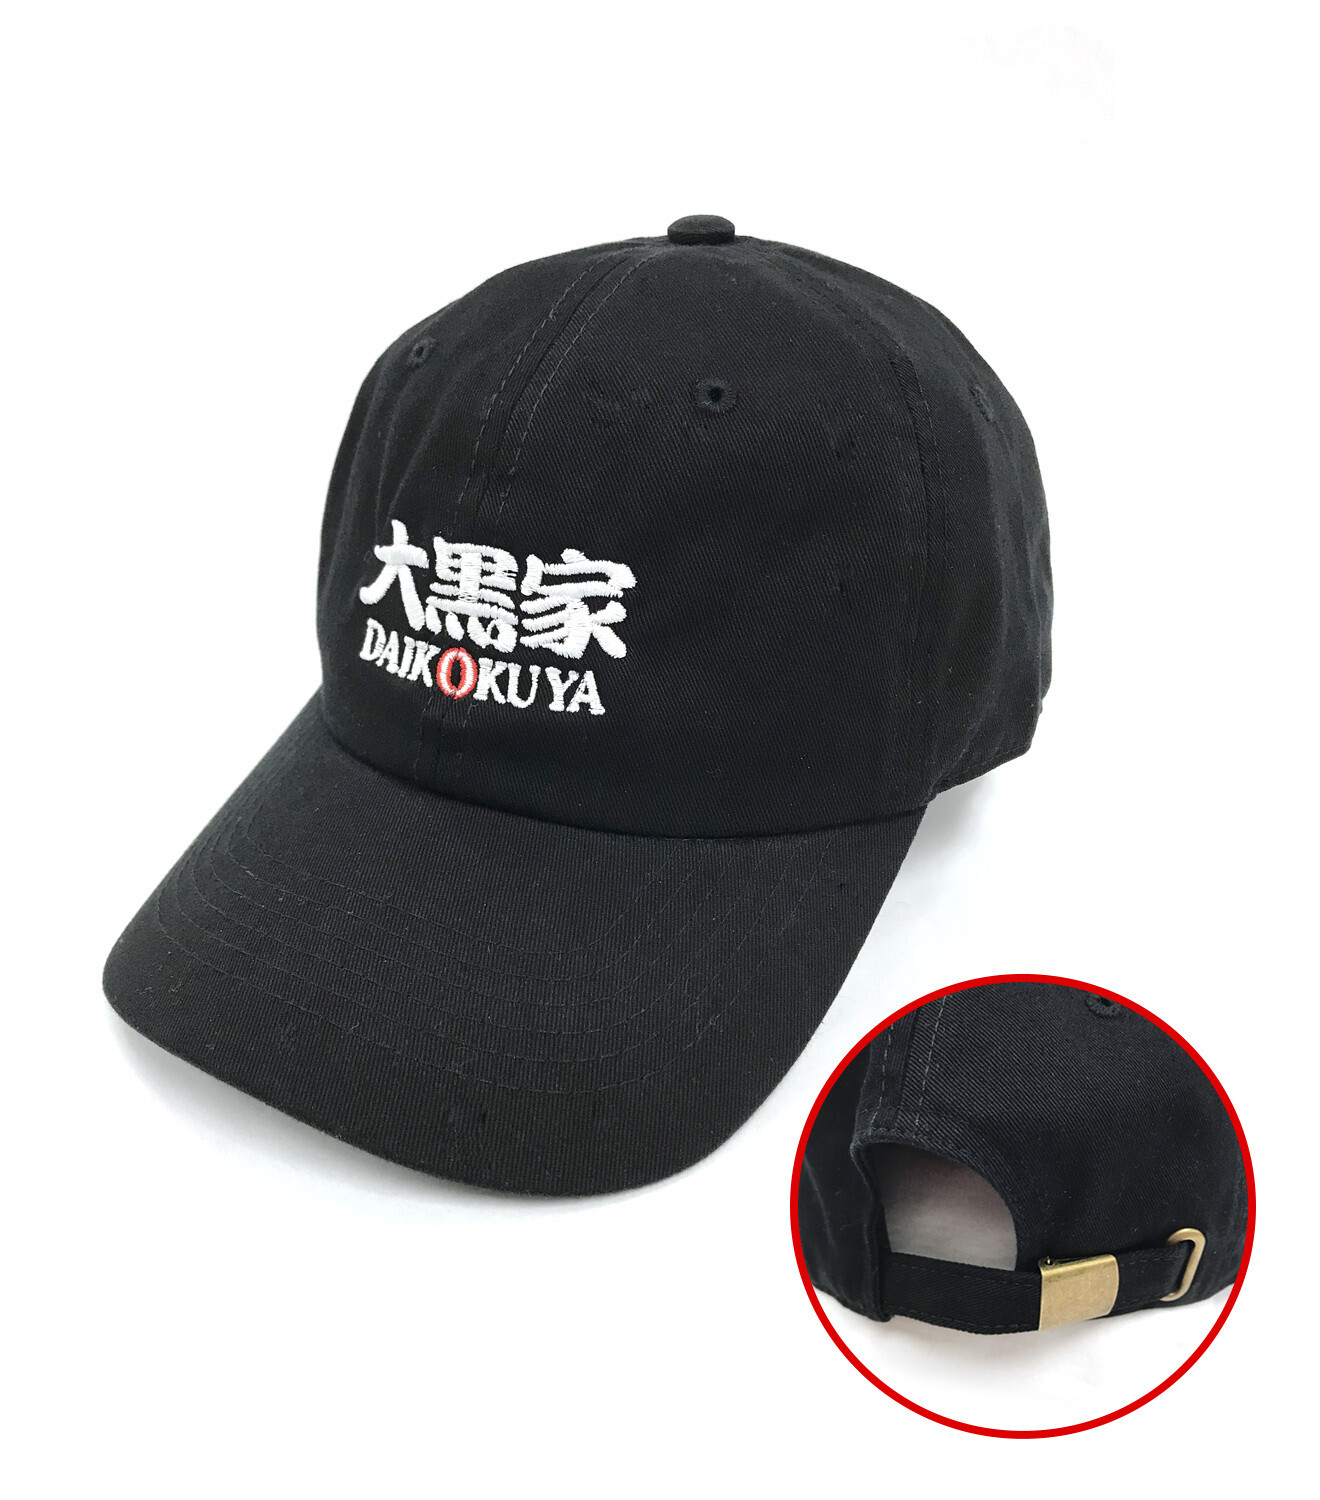 Daikokuya original cap - Black